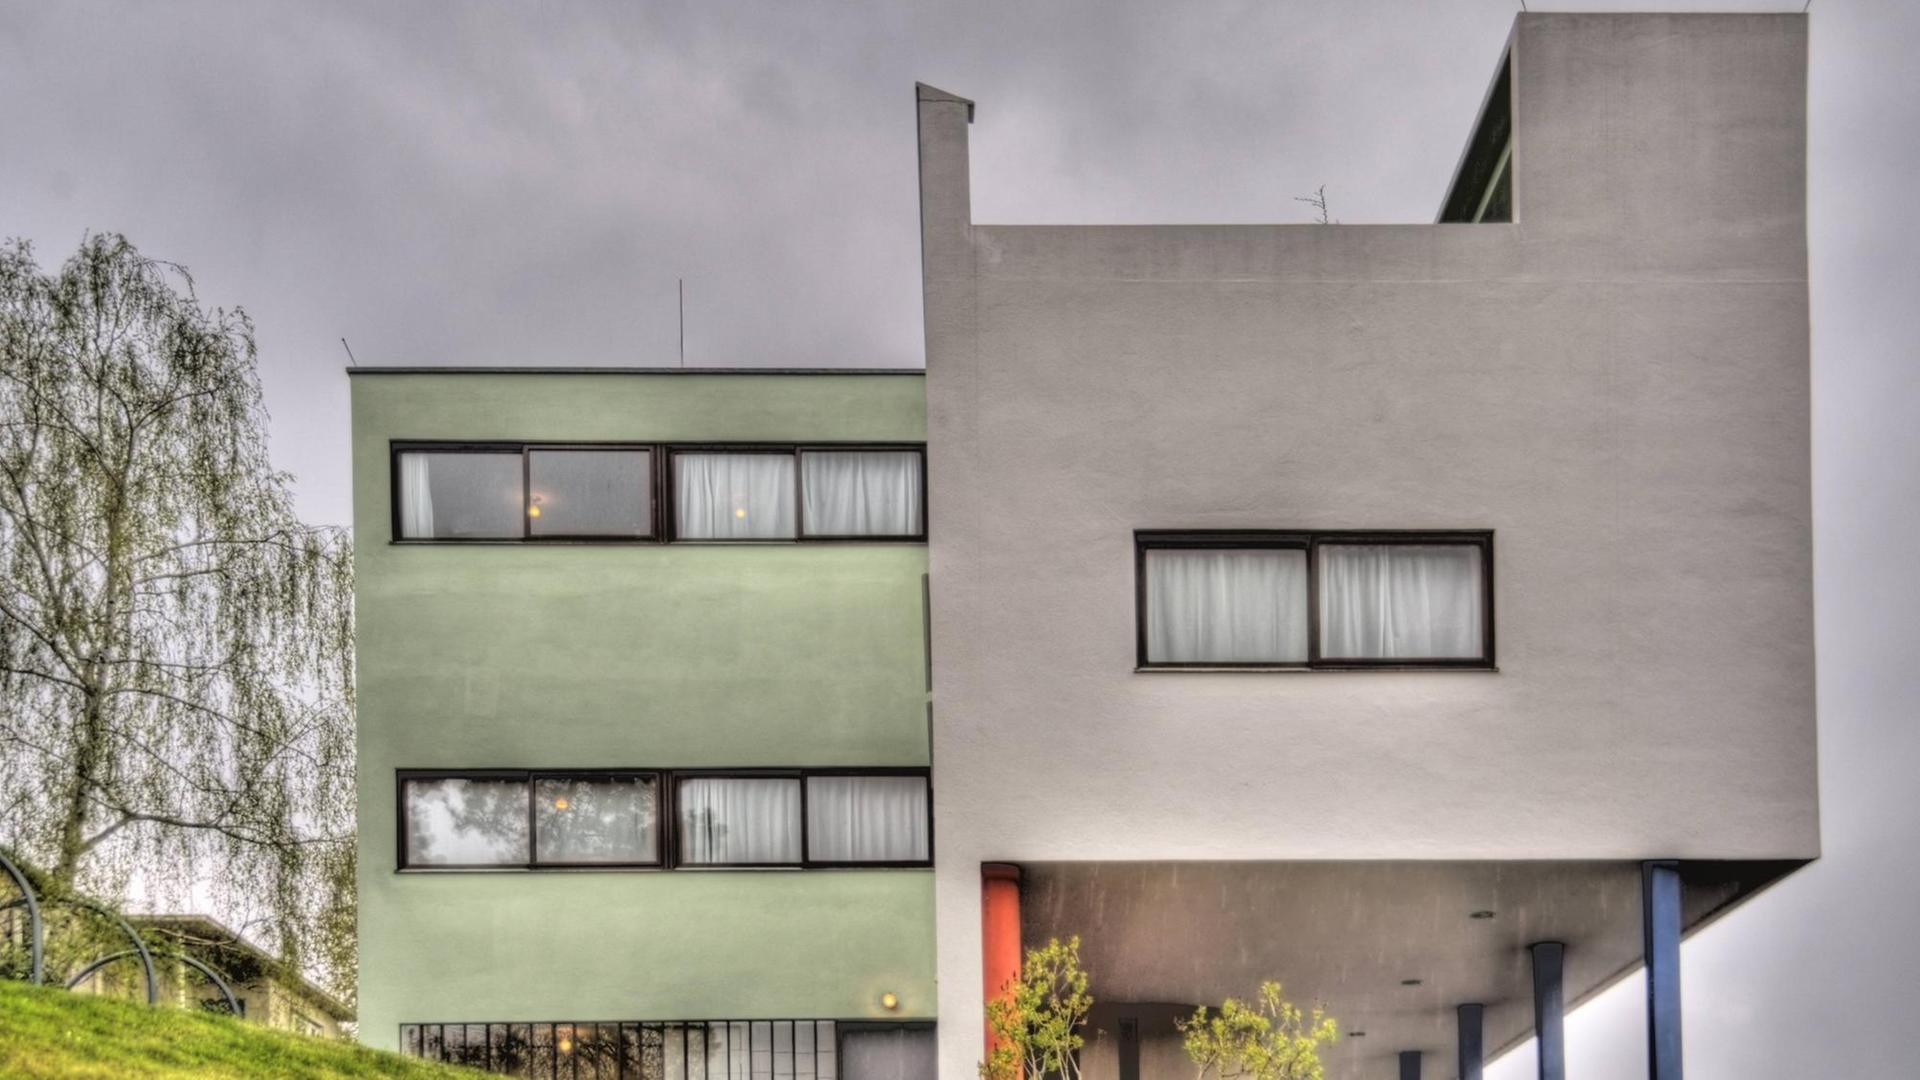 Schlichtes Bauhaus-Gebäude in der Weissenhofsiedlung, die auch von Le Corbusier gestaltet wurde.